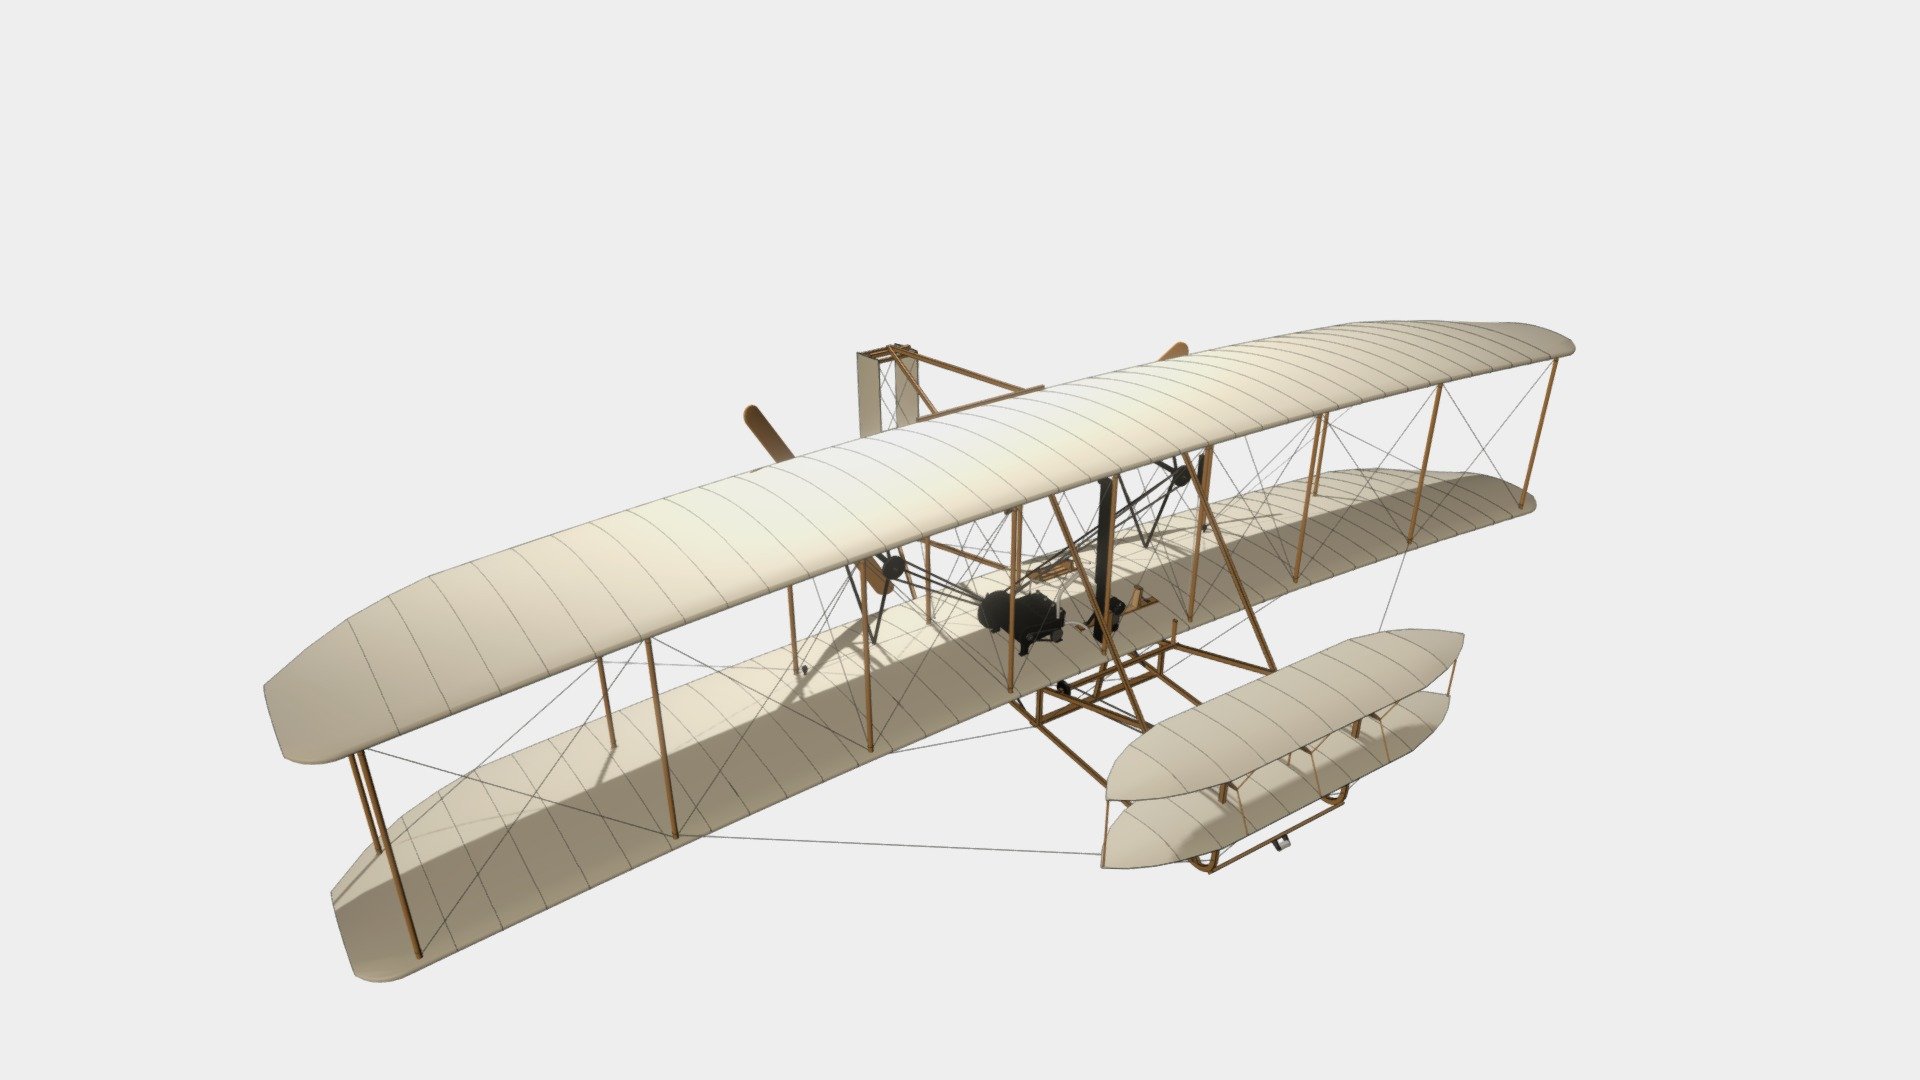 1903-wright-flyer-3d-model-by-byrikardo3d-byrikardo-13f5f10